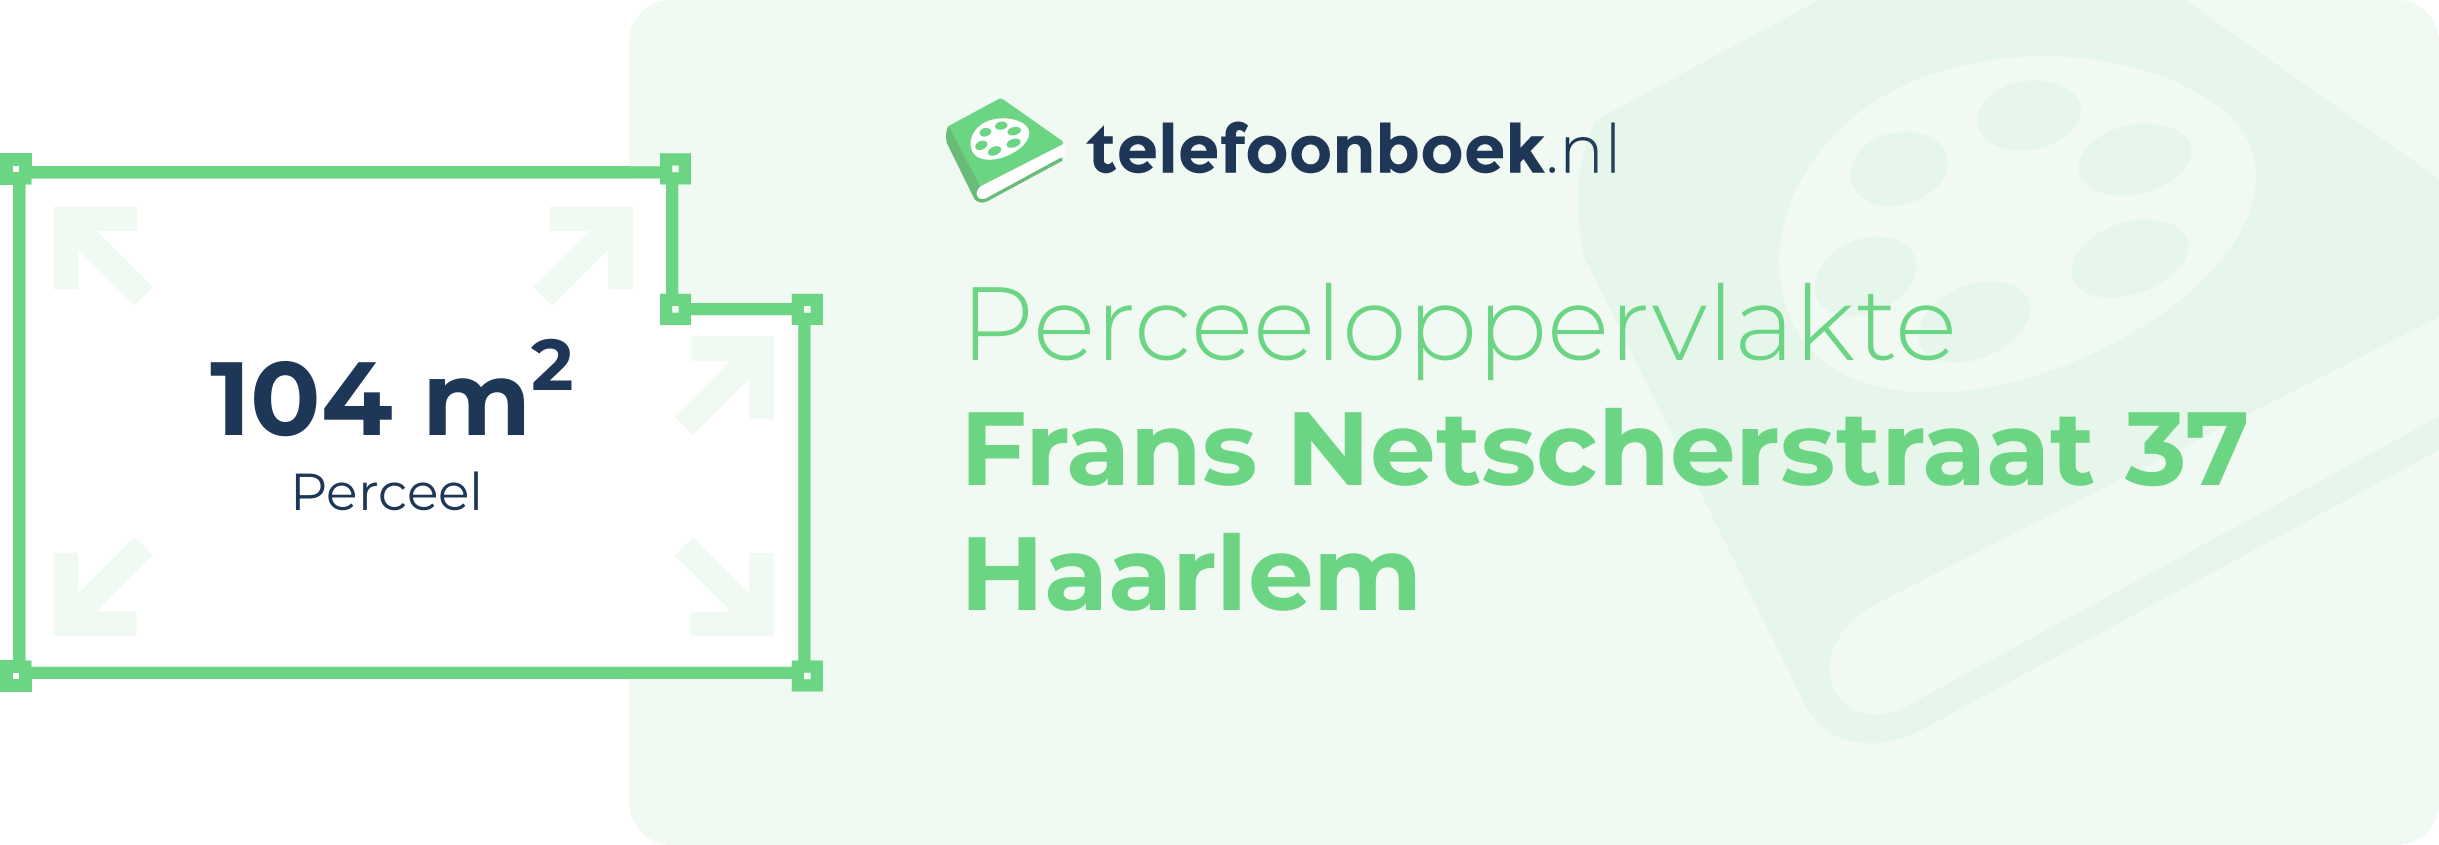 Perceeloppervlakte Frans Netscherstraat 37 Haarlem